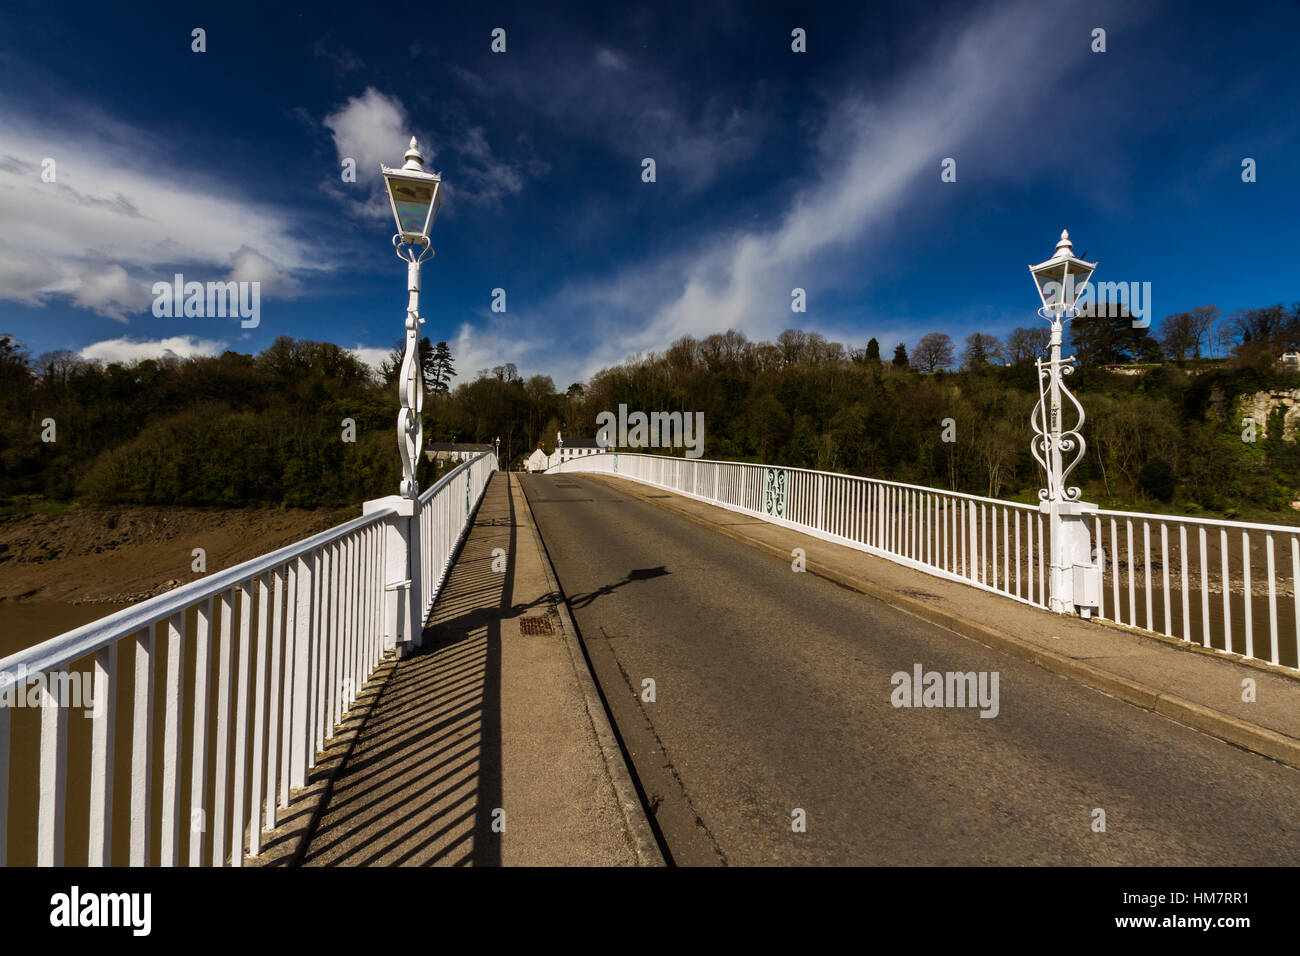 Vieux pont sur la route reliant la rivière Wye, au Pays de Galles et de Chepstow Tutshill en Angleterre. Banque D'Images